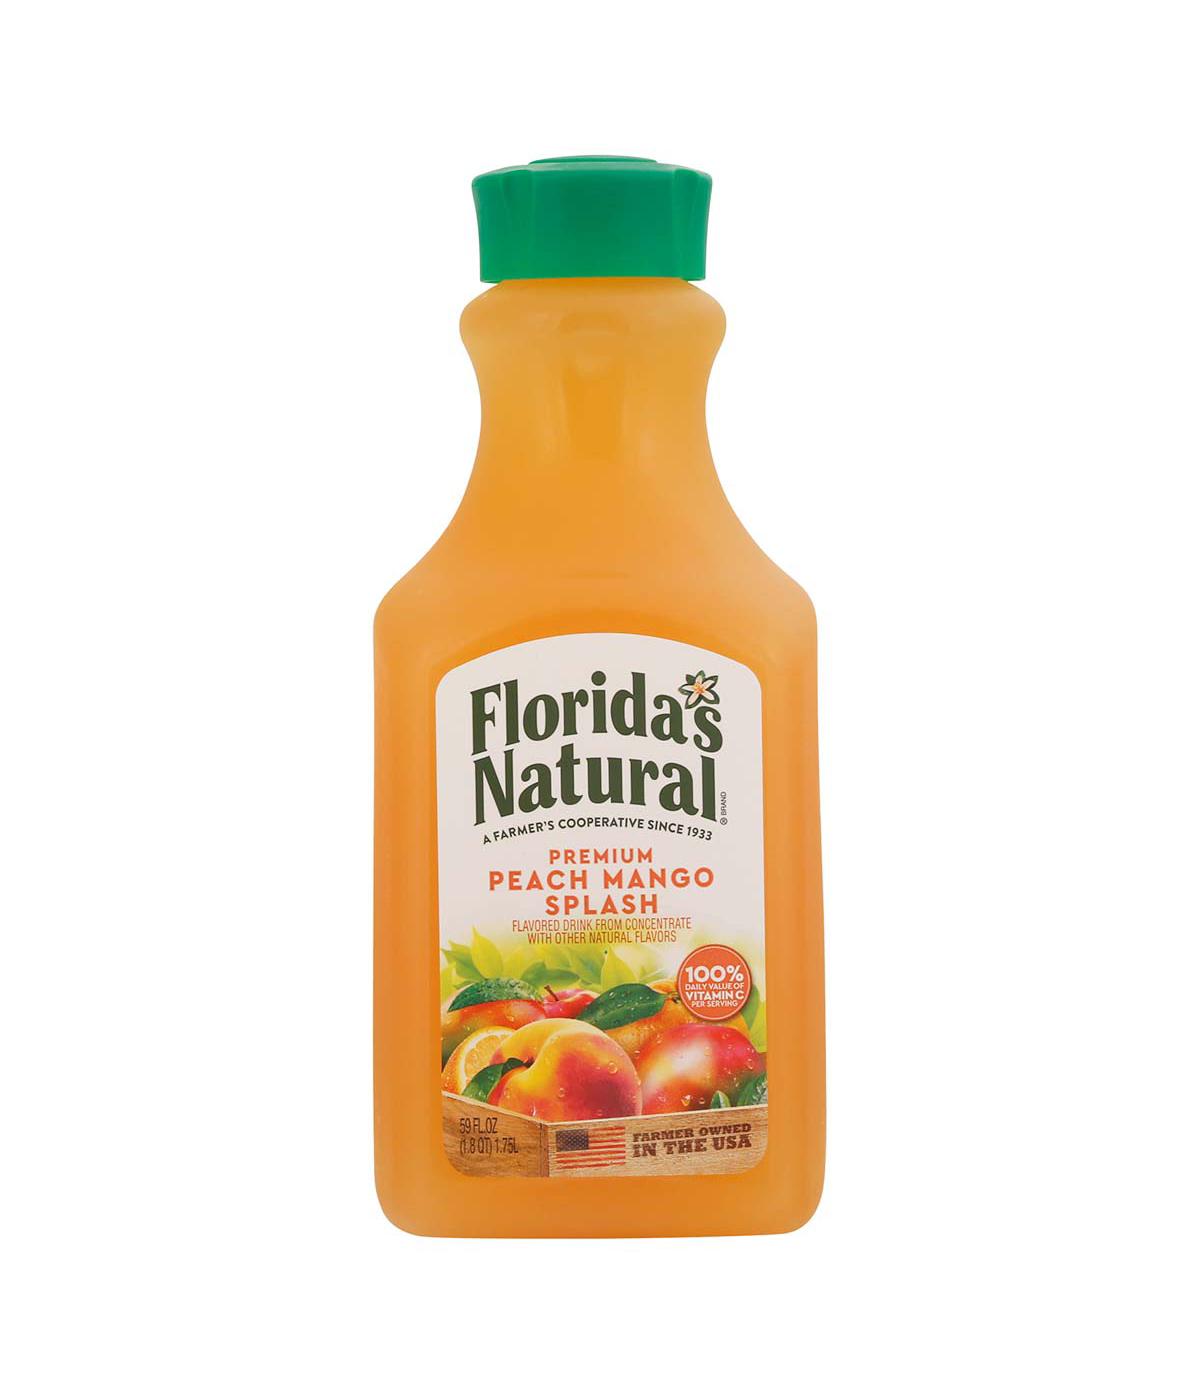 Florida's Natural Premium Peach Mango Splash Drink; image 1 of 2